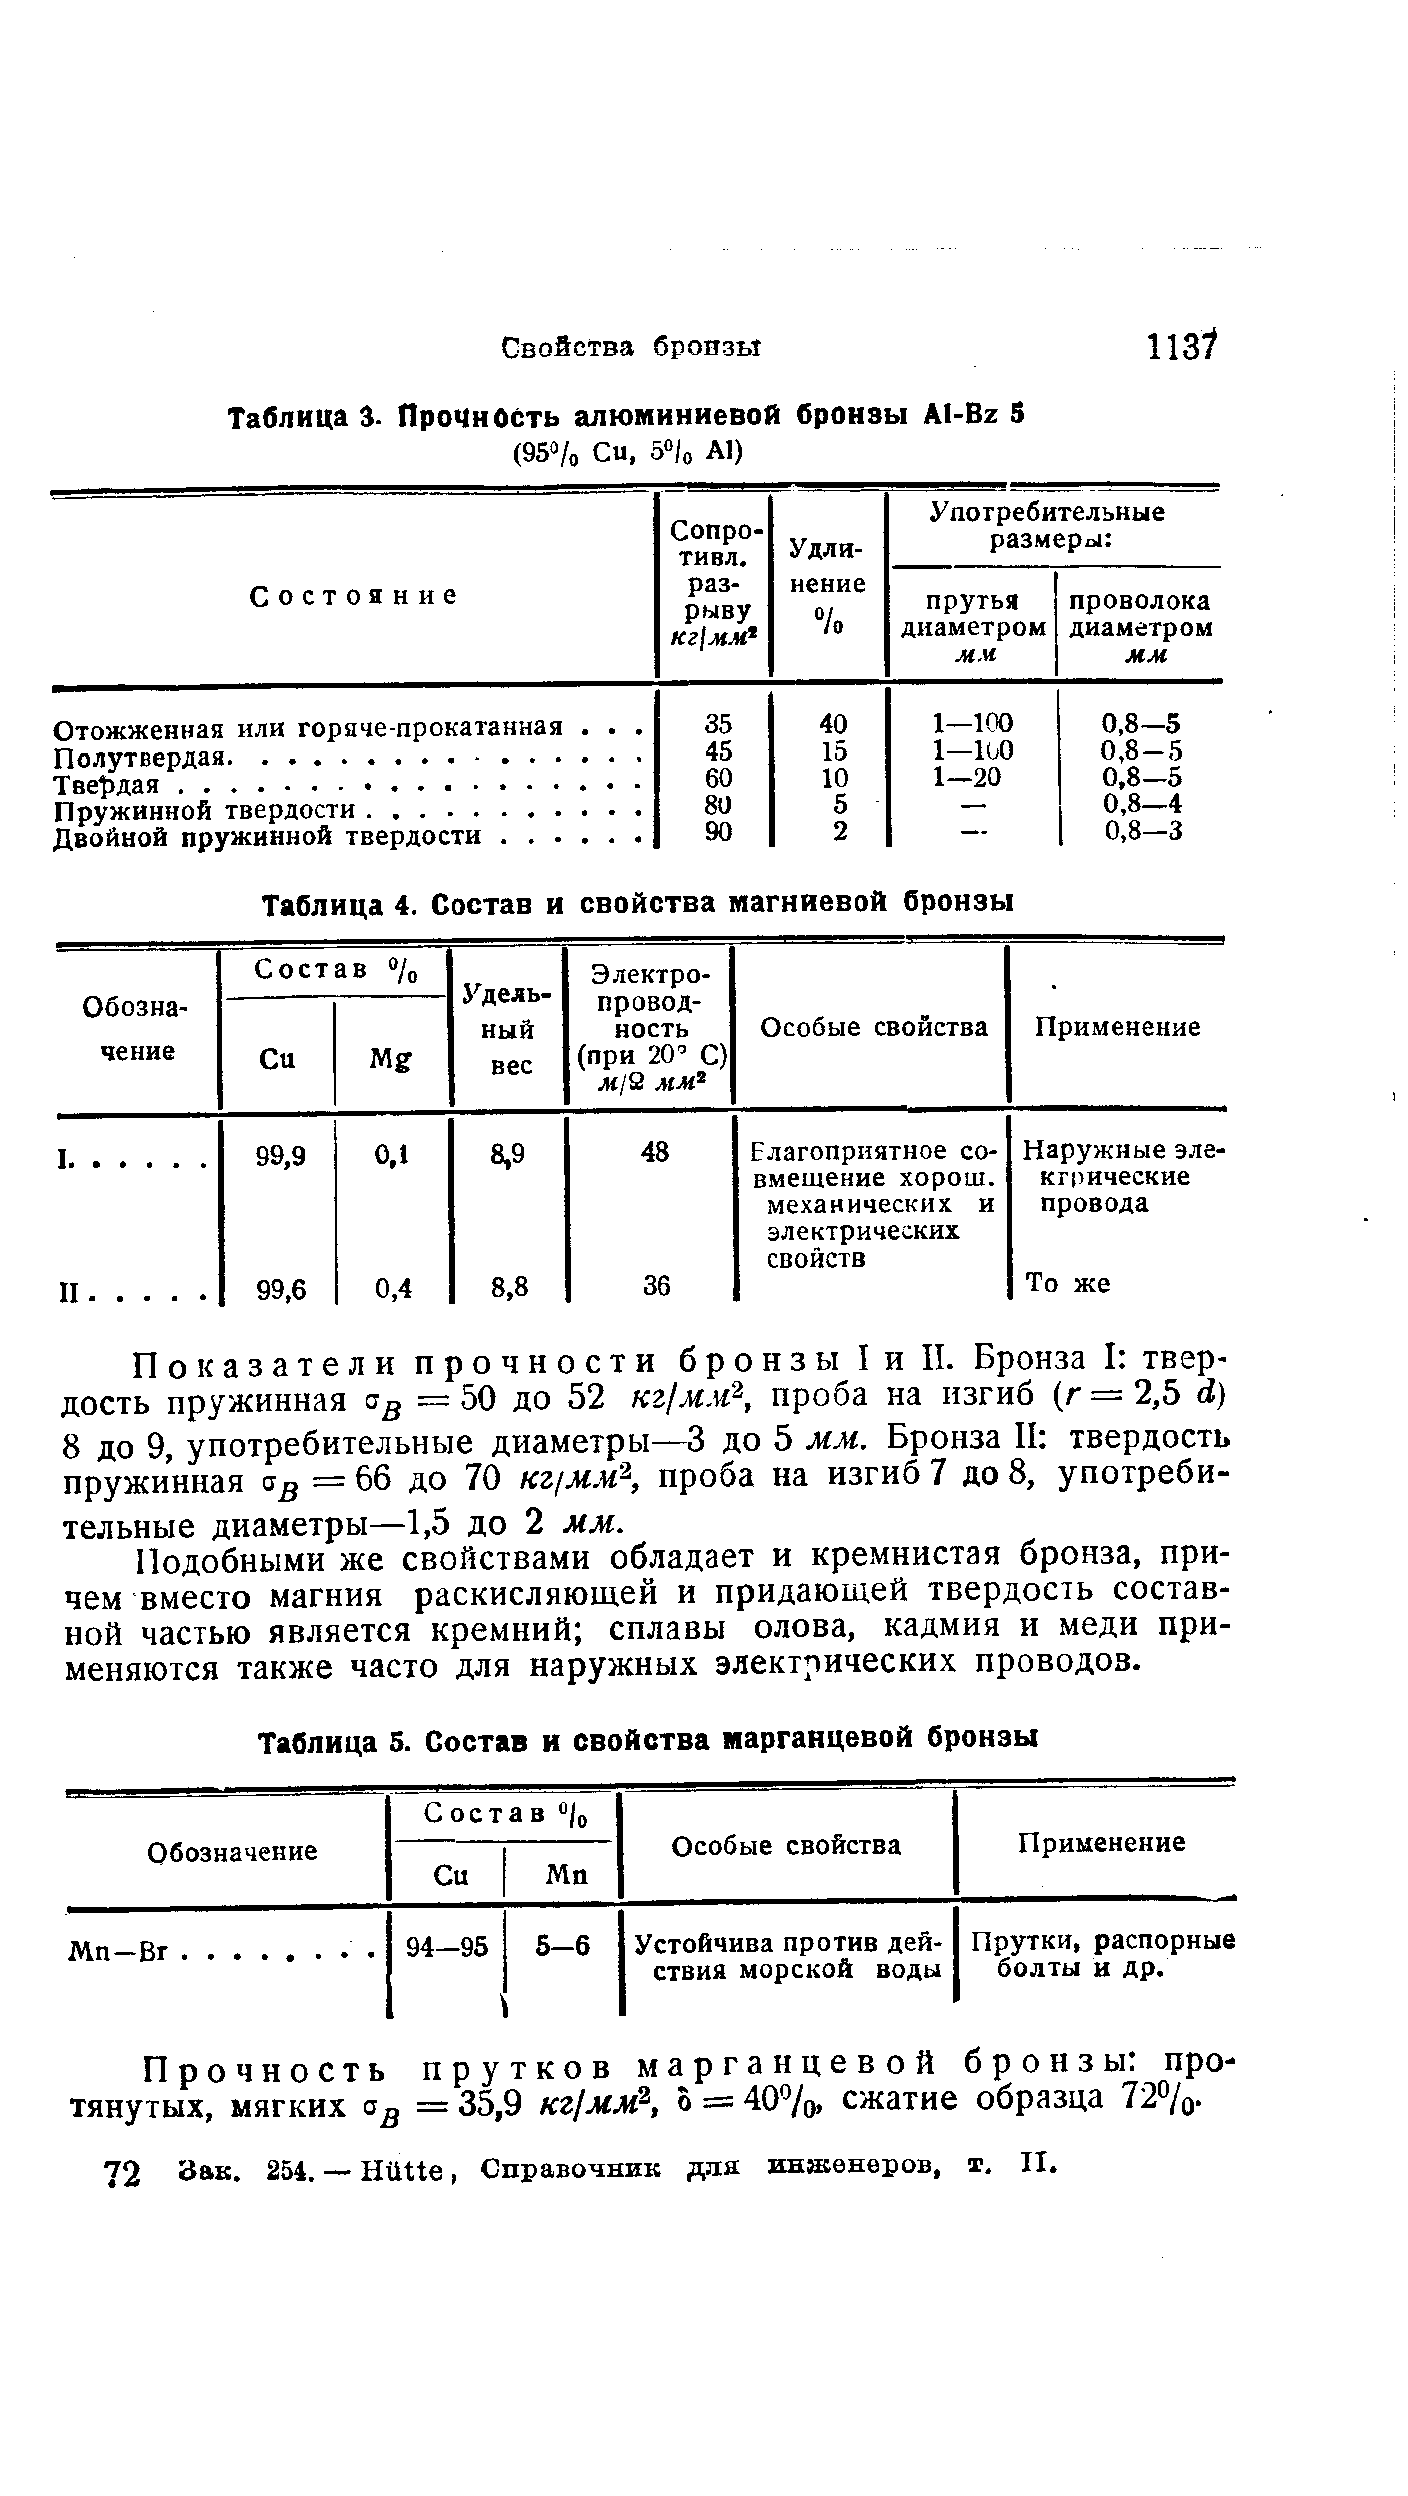 Таблица 4. Состав и свойства магниевой бронзы
